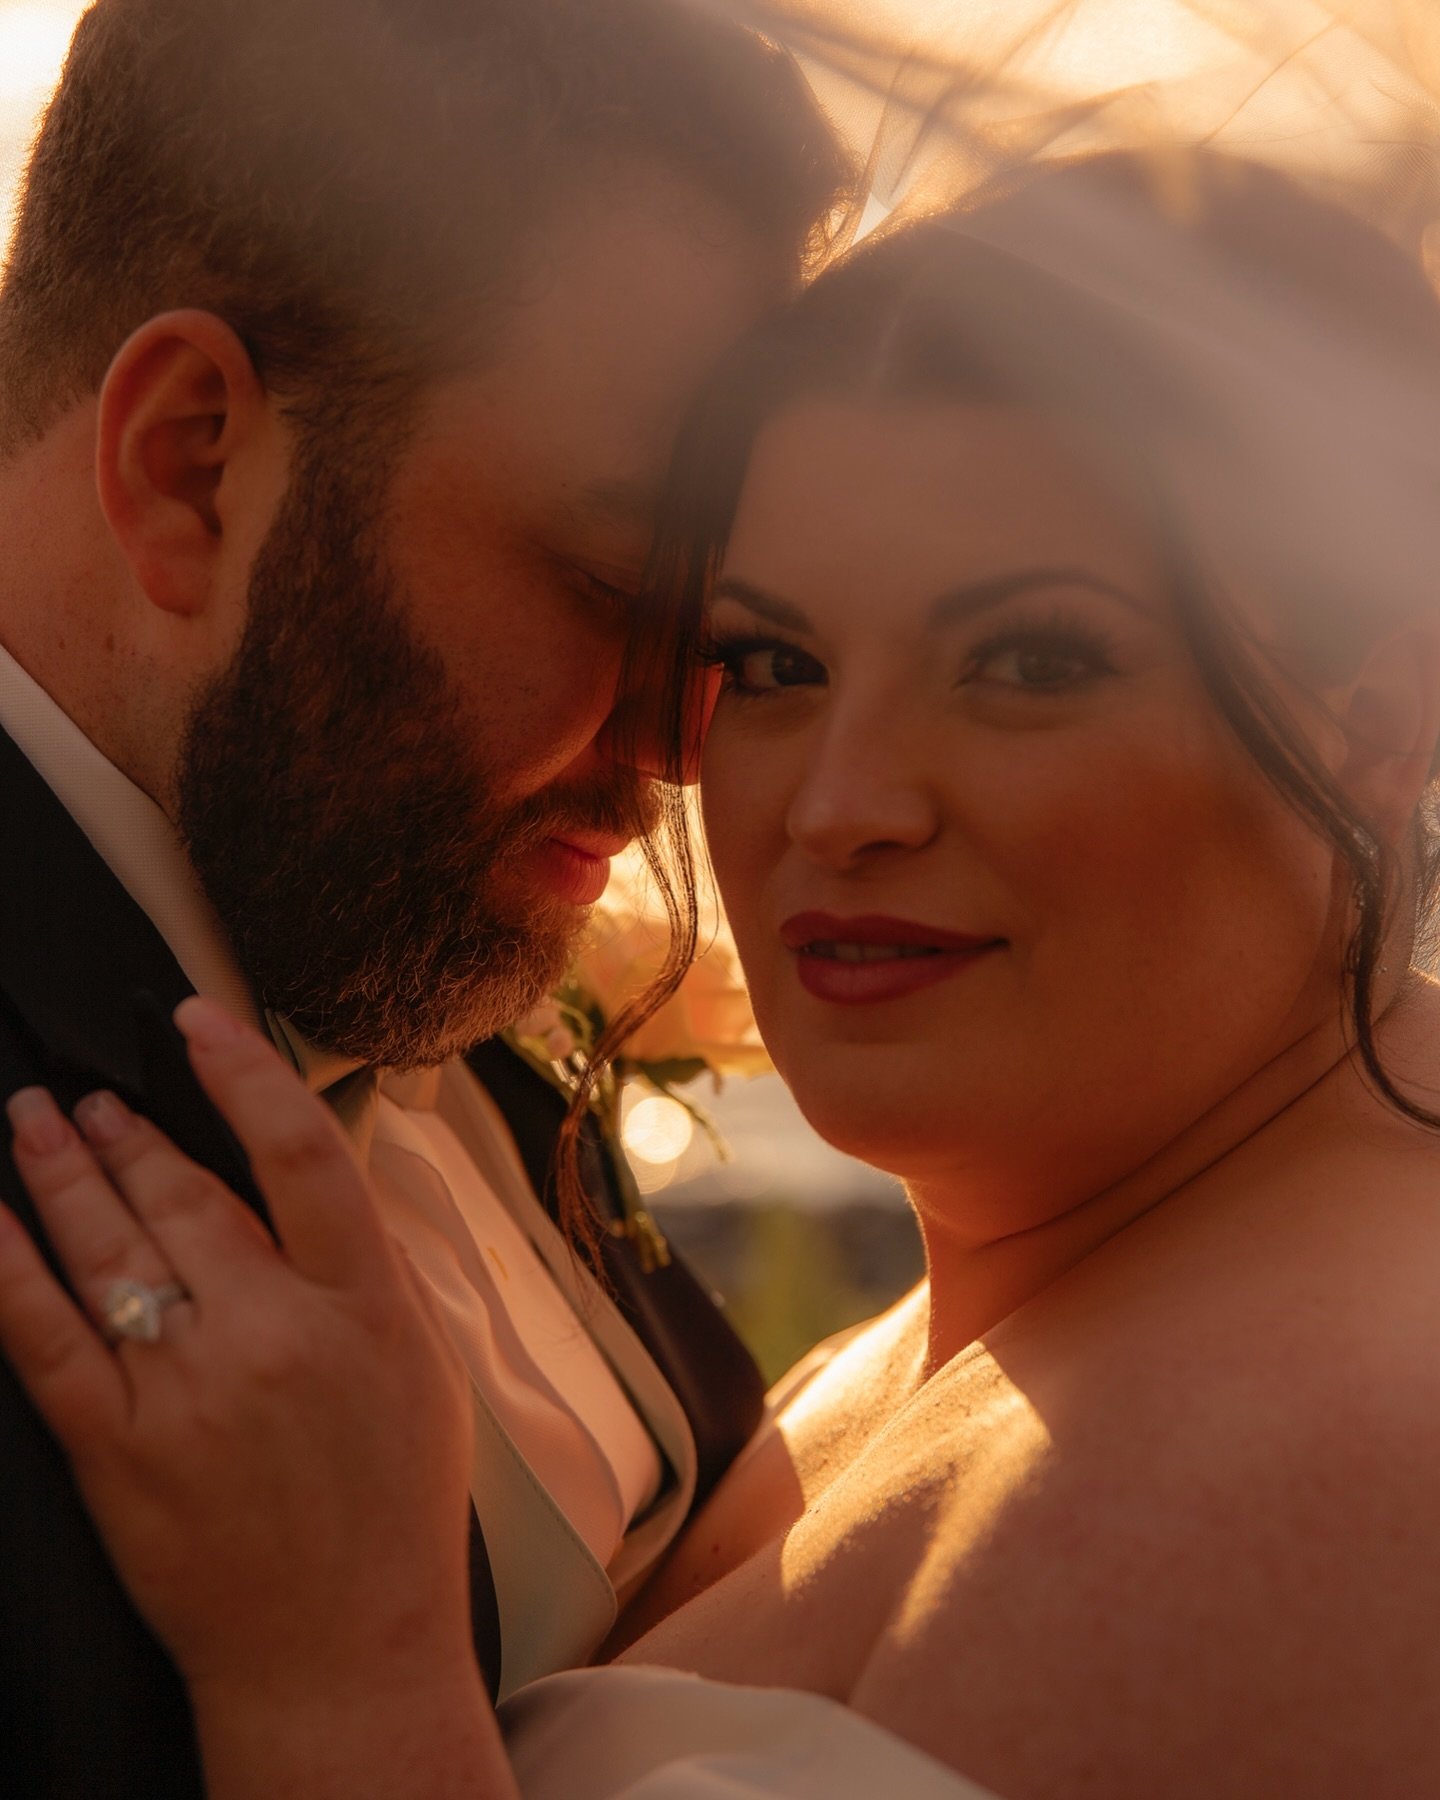 studio lighting &lt; golden hour

📸 : @maohcana 

#weddingphotography #weddingphotographer #nycwedding #weddingplanning #longislandcity #licqueens #claireandaj #goldenhourphotography #nycgoldenhour #romantic #brideandgroom